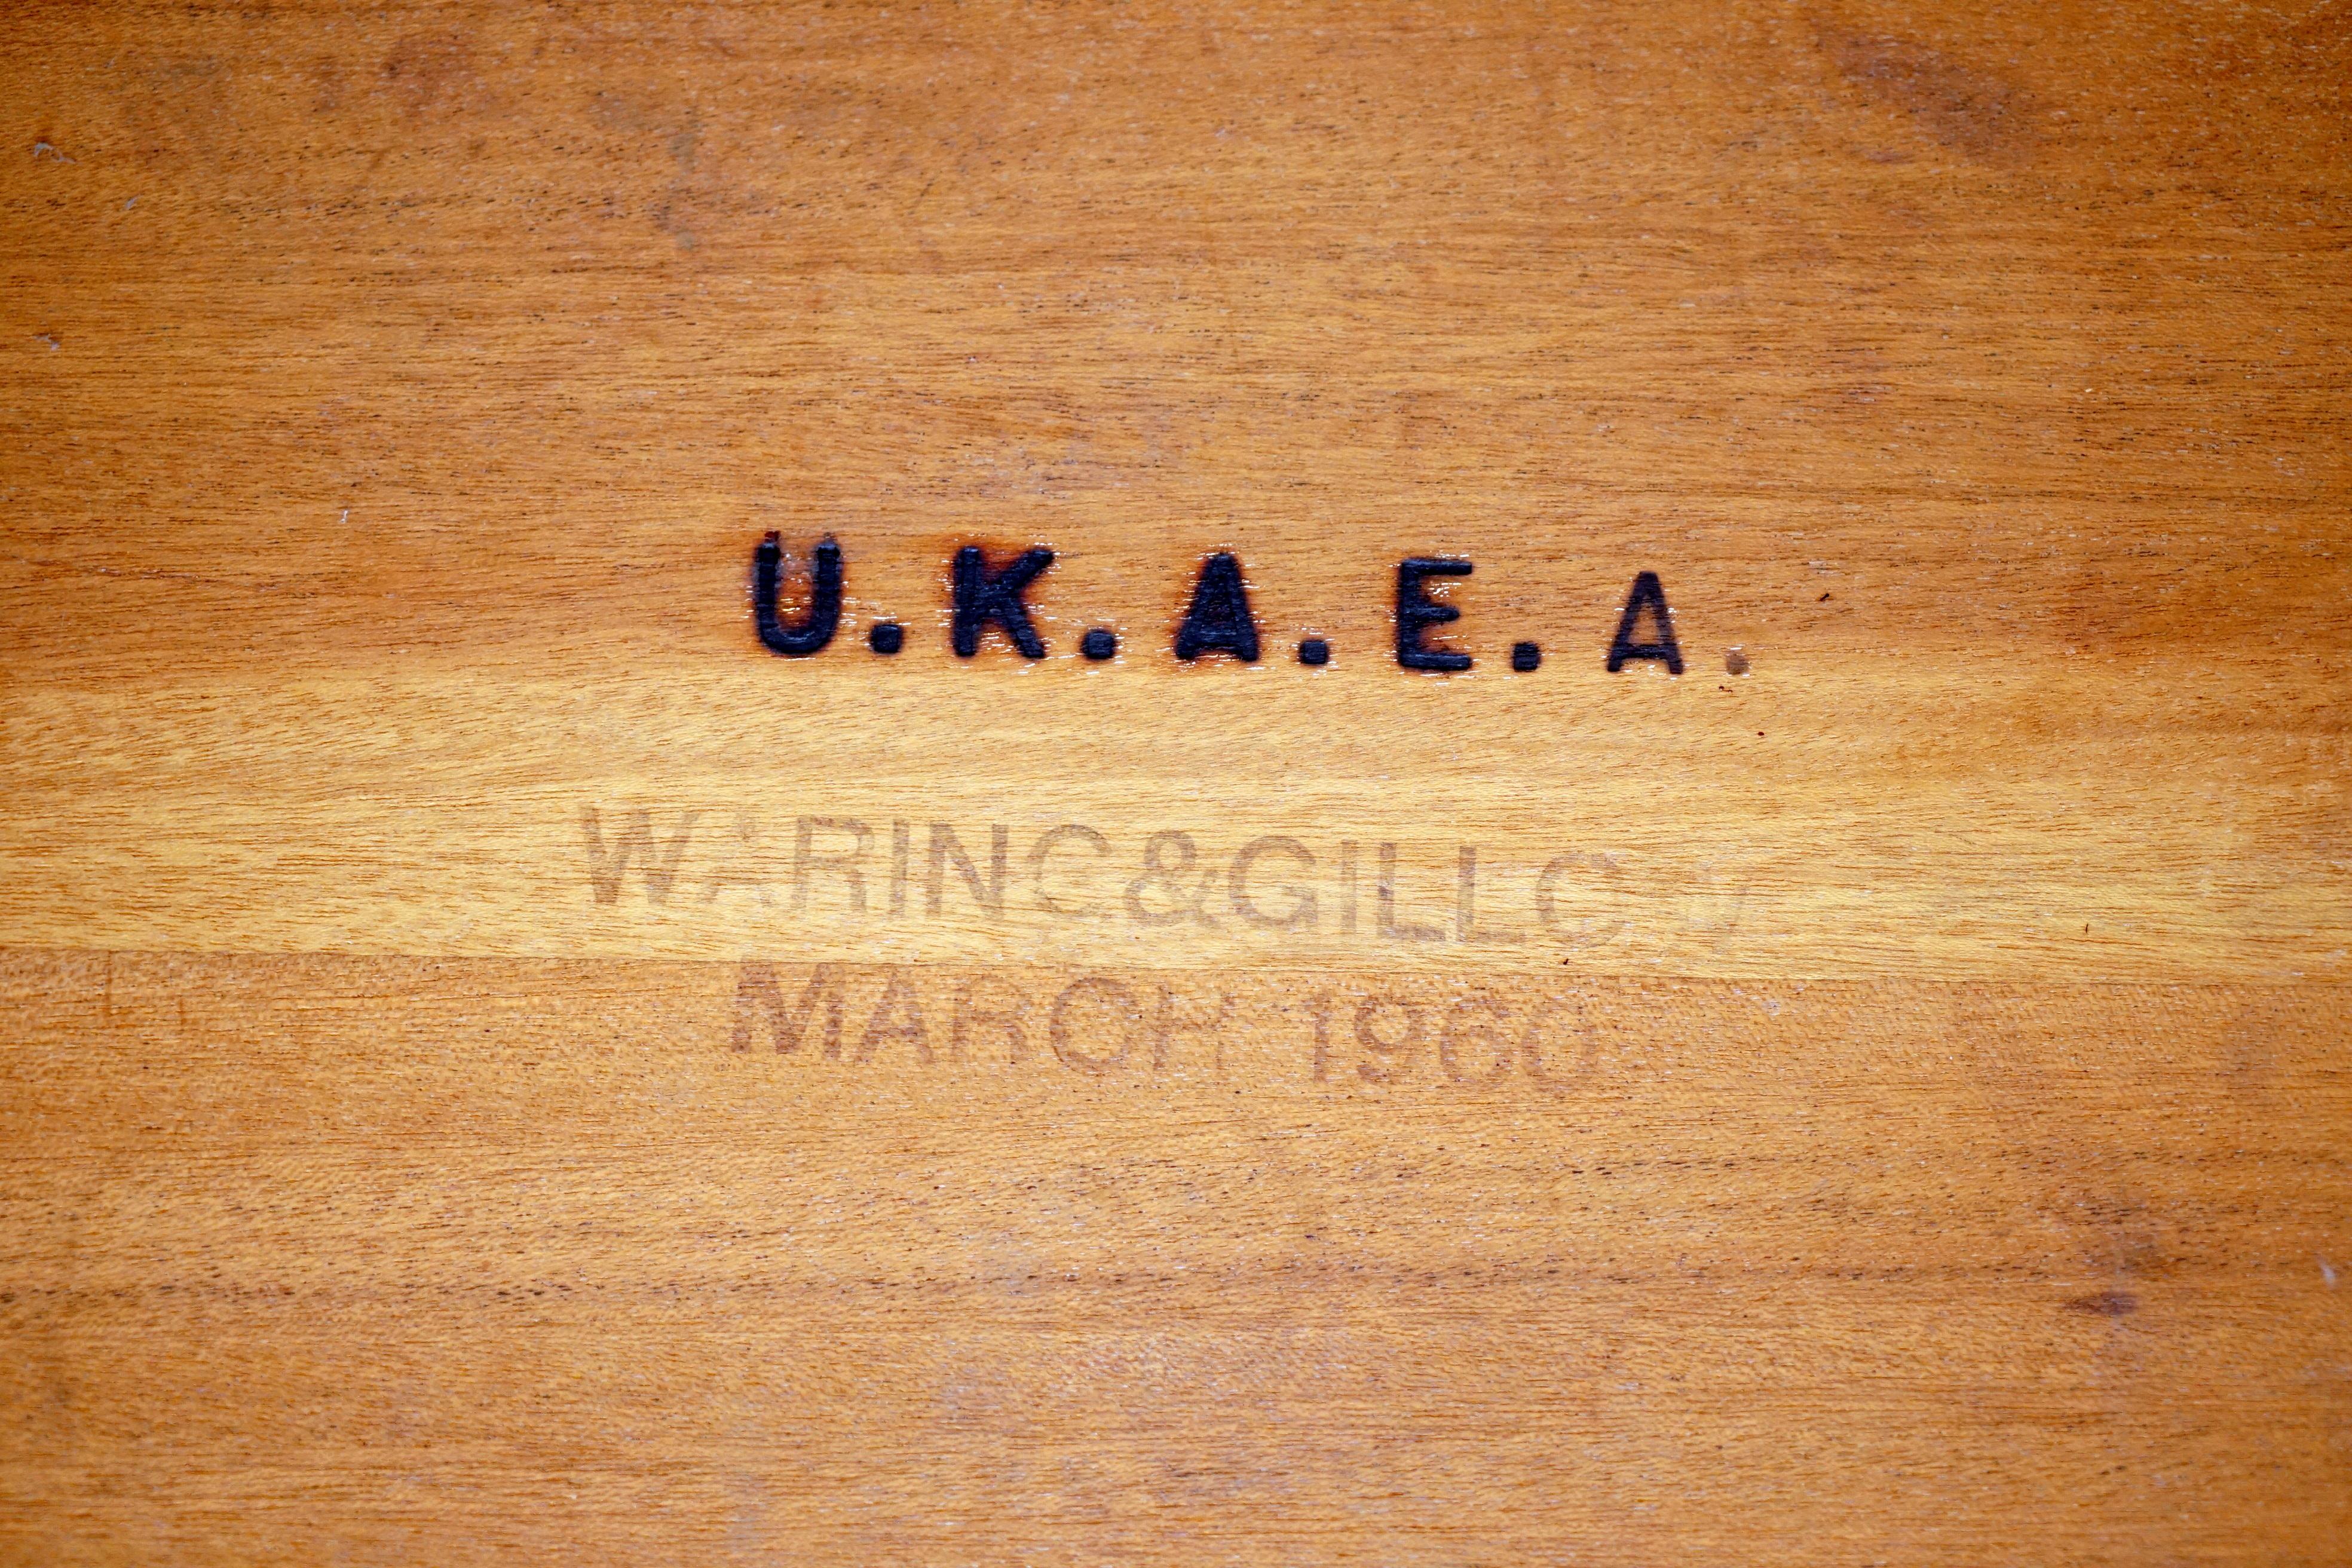 Wir freuen uns, diesen sehr seltenen originalen, vollständig gestempelten Waring & Gillow 1960 U.K.A.E.A Uk Atomic Energy Authority Schreibtisch aus hellem Nussbaumholz zum Verkauf anbieten zu können

Dieser Schreibtisch ist erhaben, die Qualität